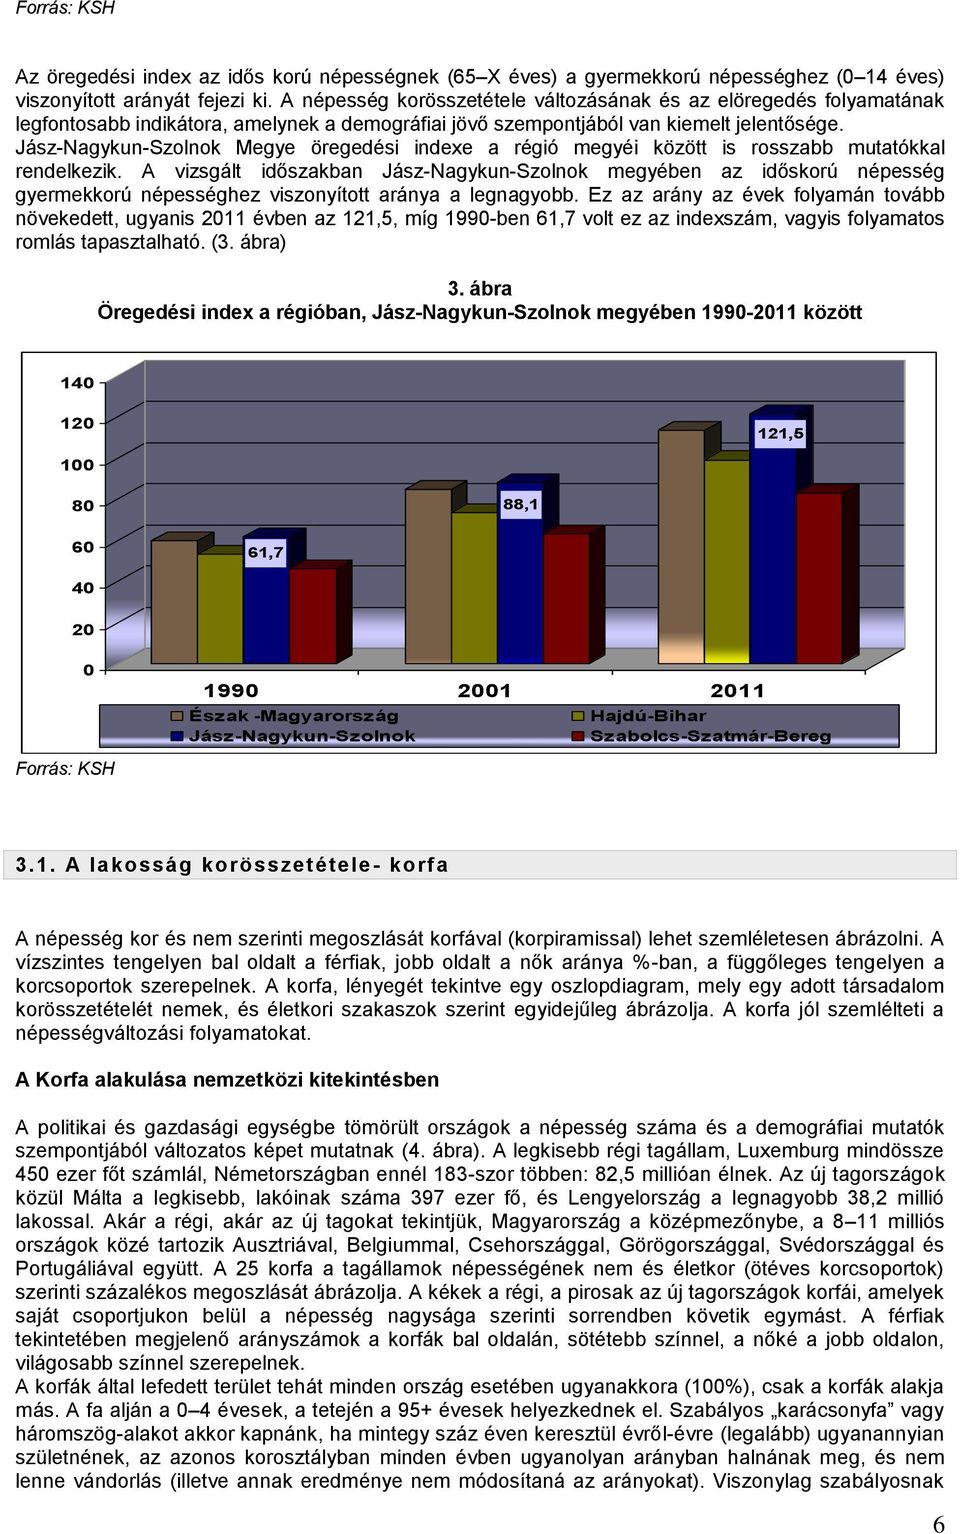 Jász-Nagykun-Szolnok Megye öregedési indexe a régió megyéi között is rosszabb mutatókkal rendelkezik.